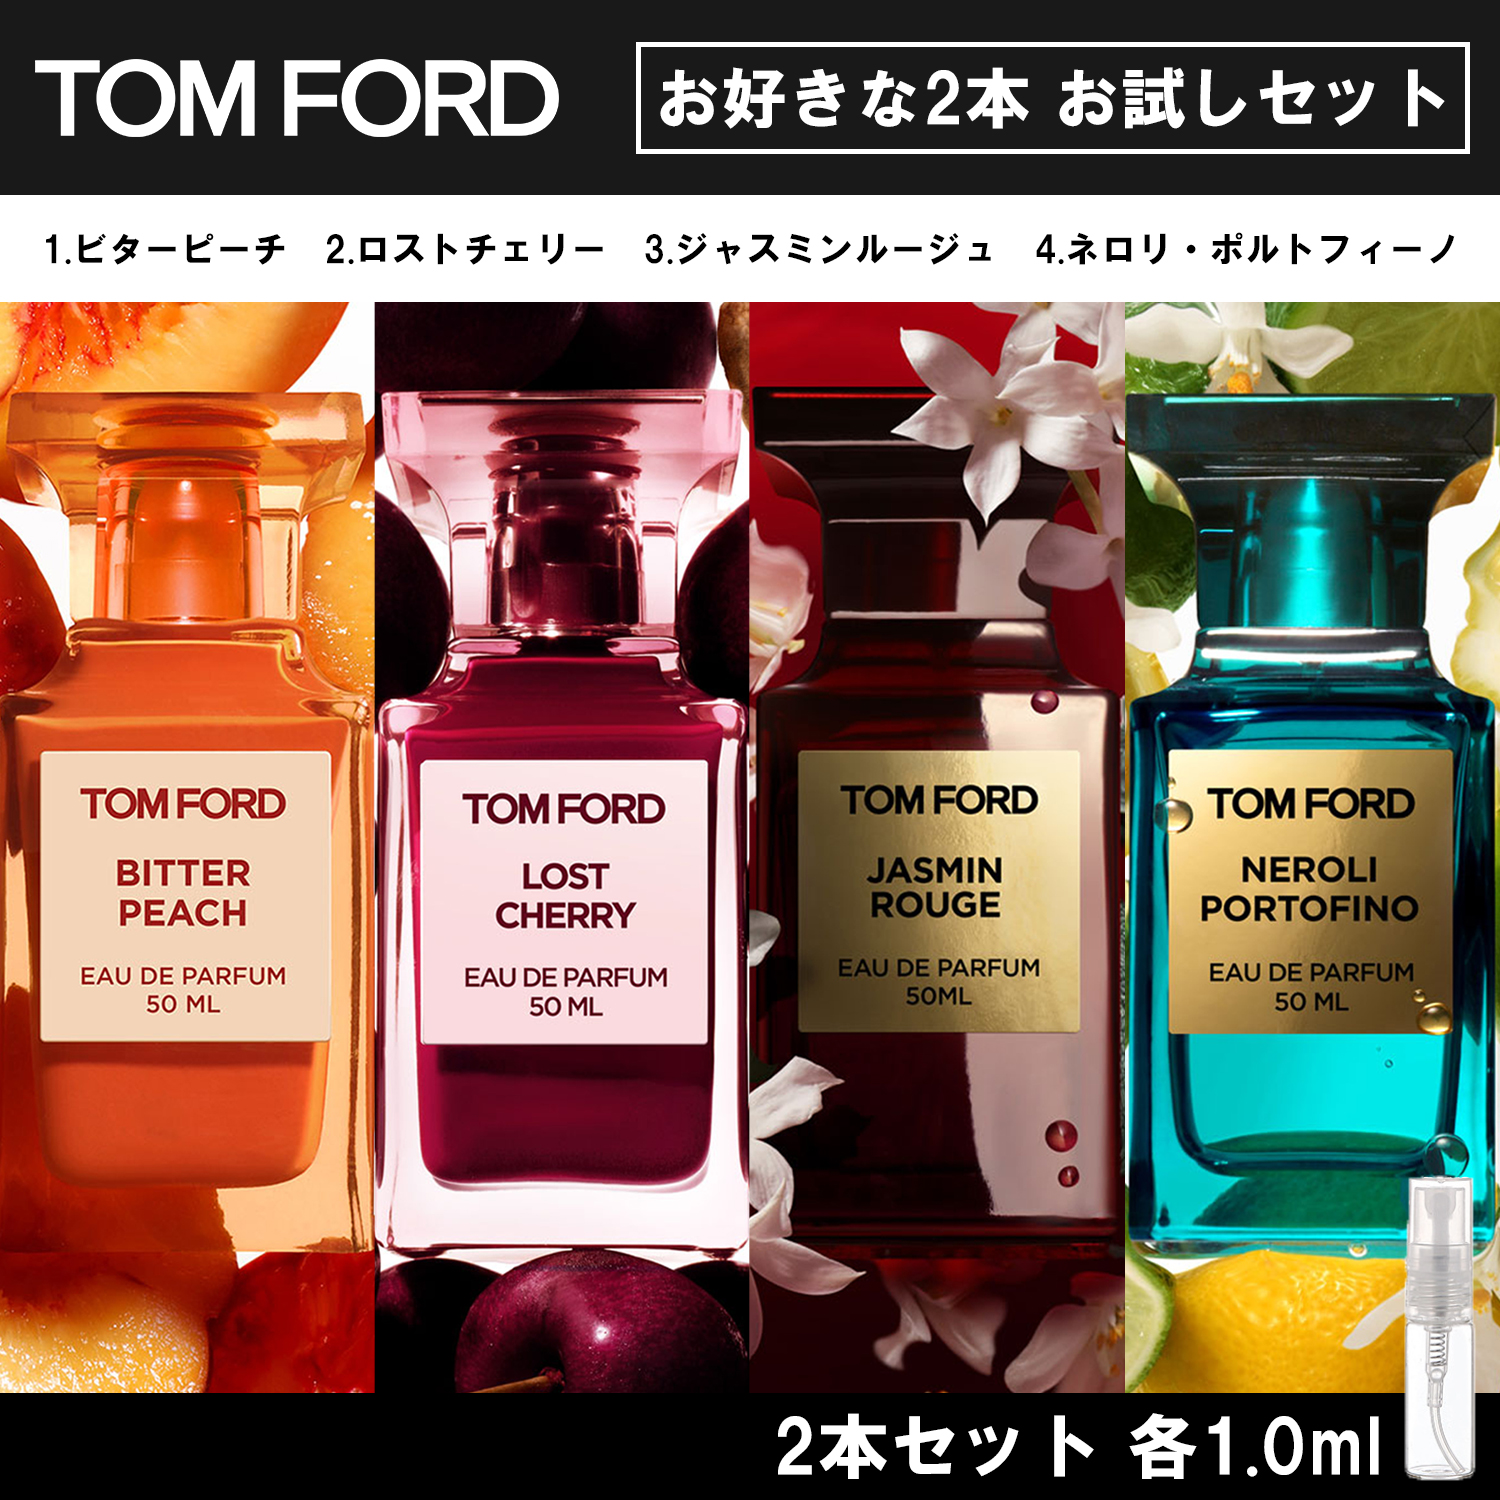 TOMFORD トムフォード 香水 お試し 1ml 選べる 2本セット 人気 メンズ